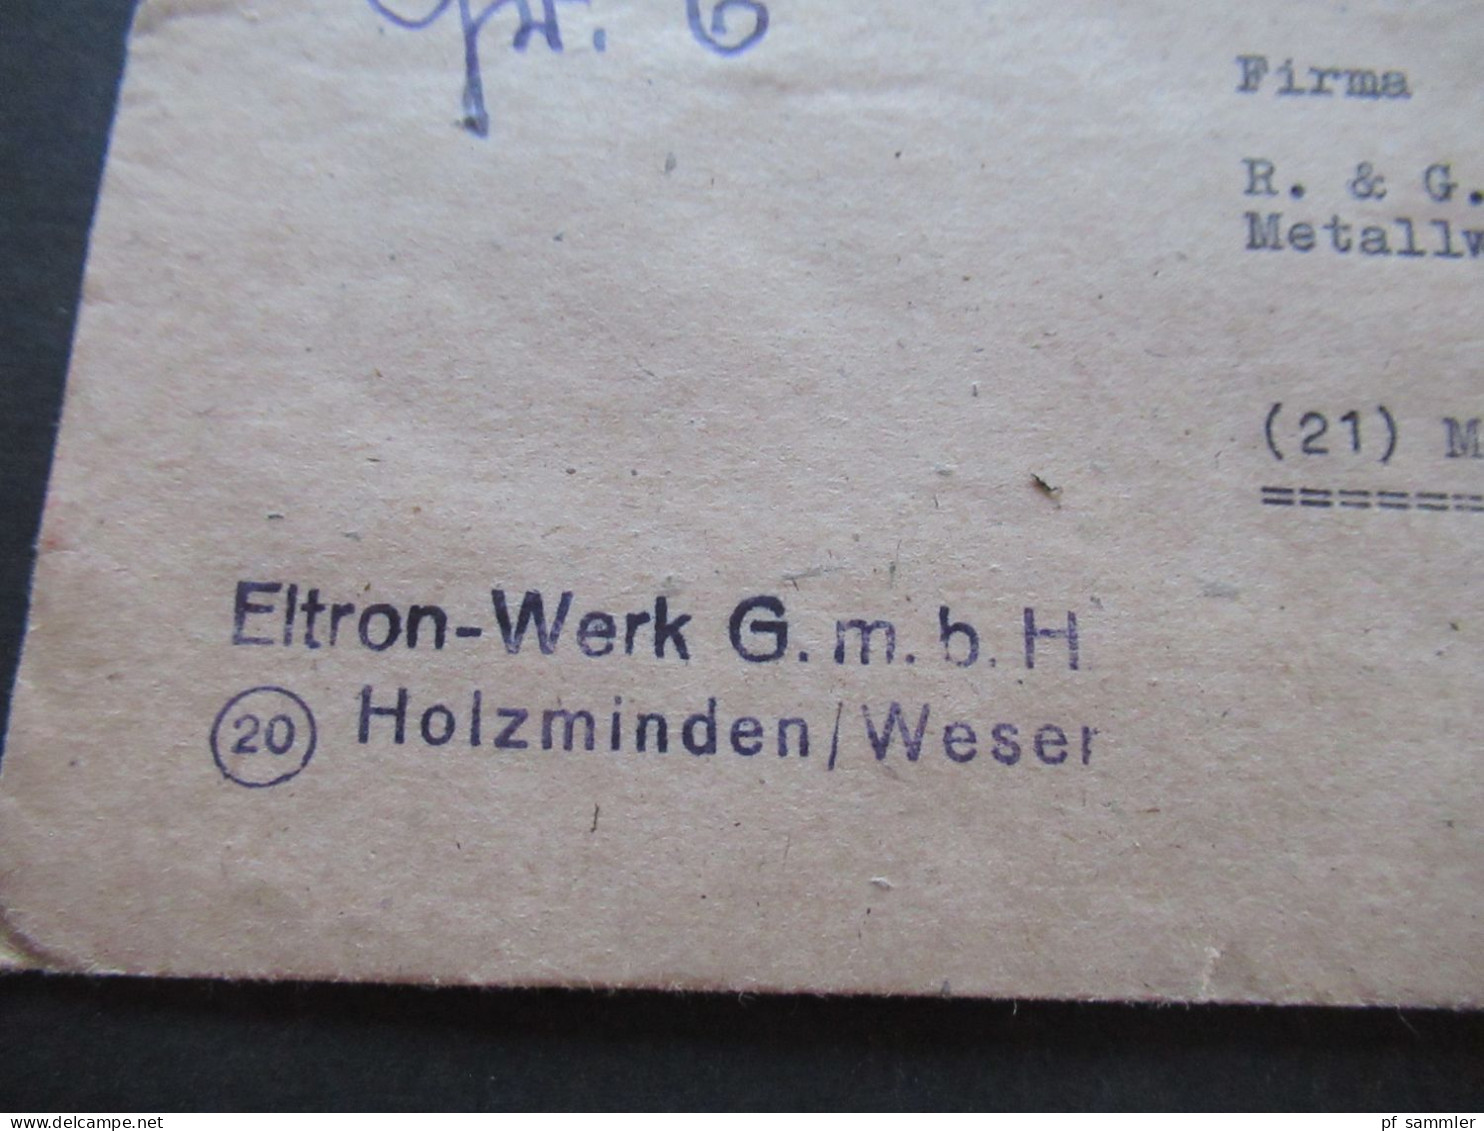 Kontrollrat Mi.Nr.949 EF Mit Bahnpost Stempel Braunschweig Firmen Stempel Eltron Werk GmbH Holzminden Weser - Covers & Documents